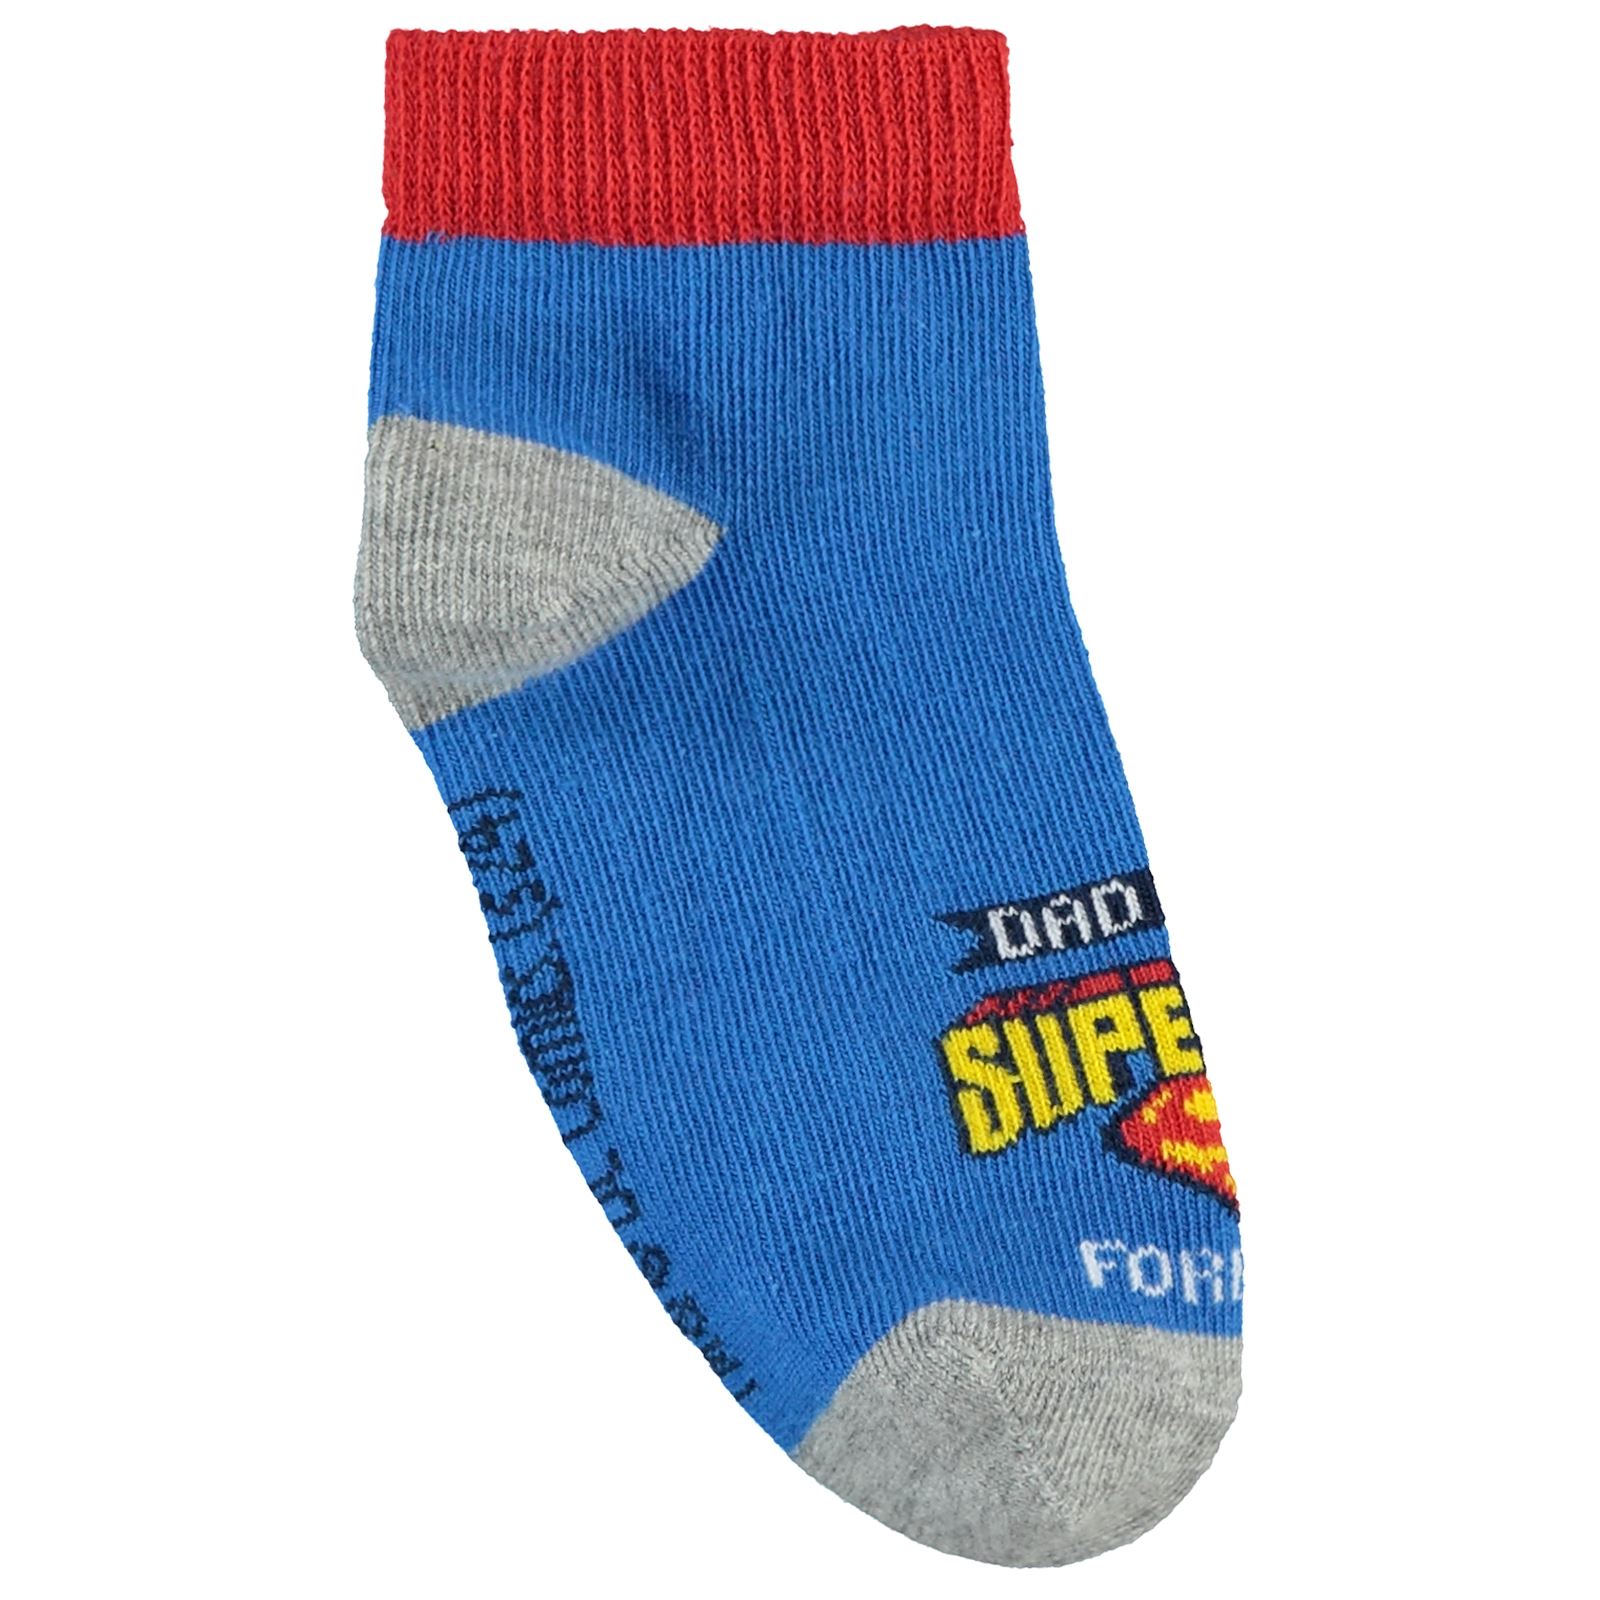 Süperman Erkek Çocuk Patik Çorap 2-12 Yaş 